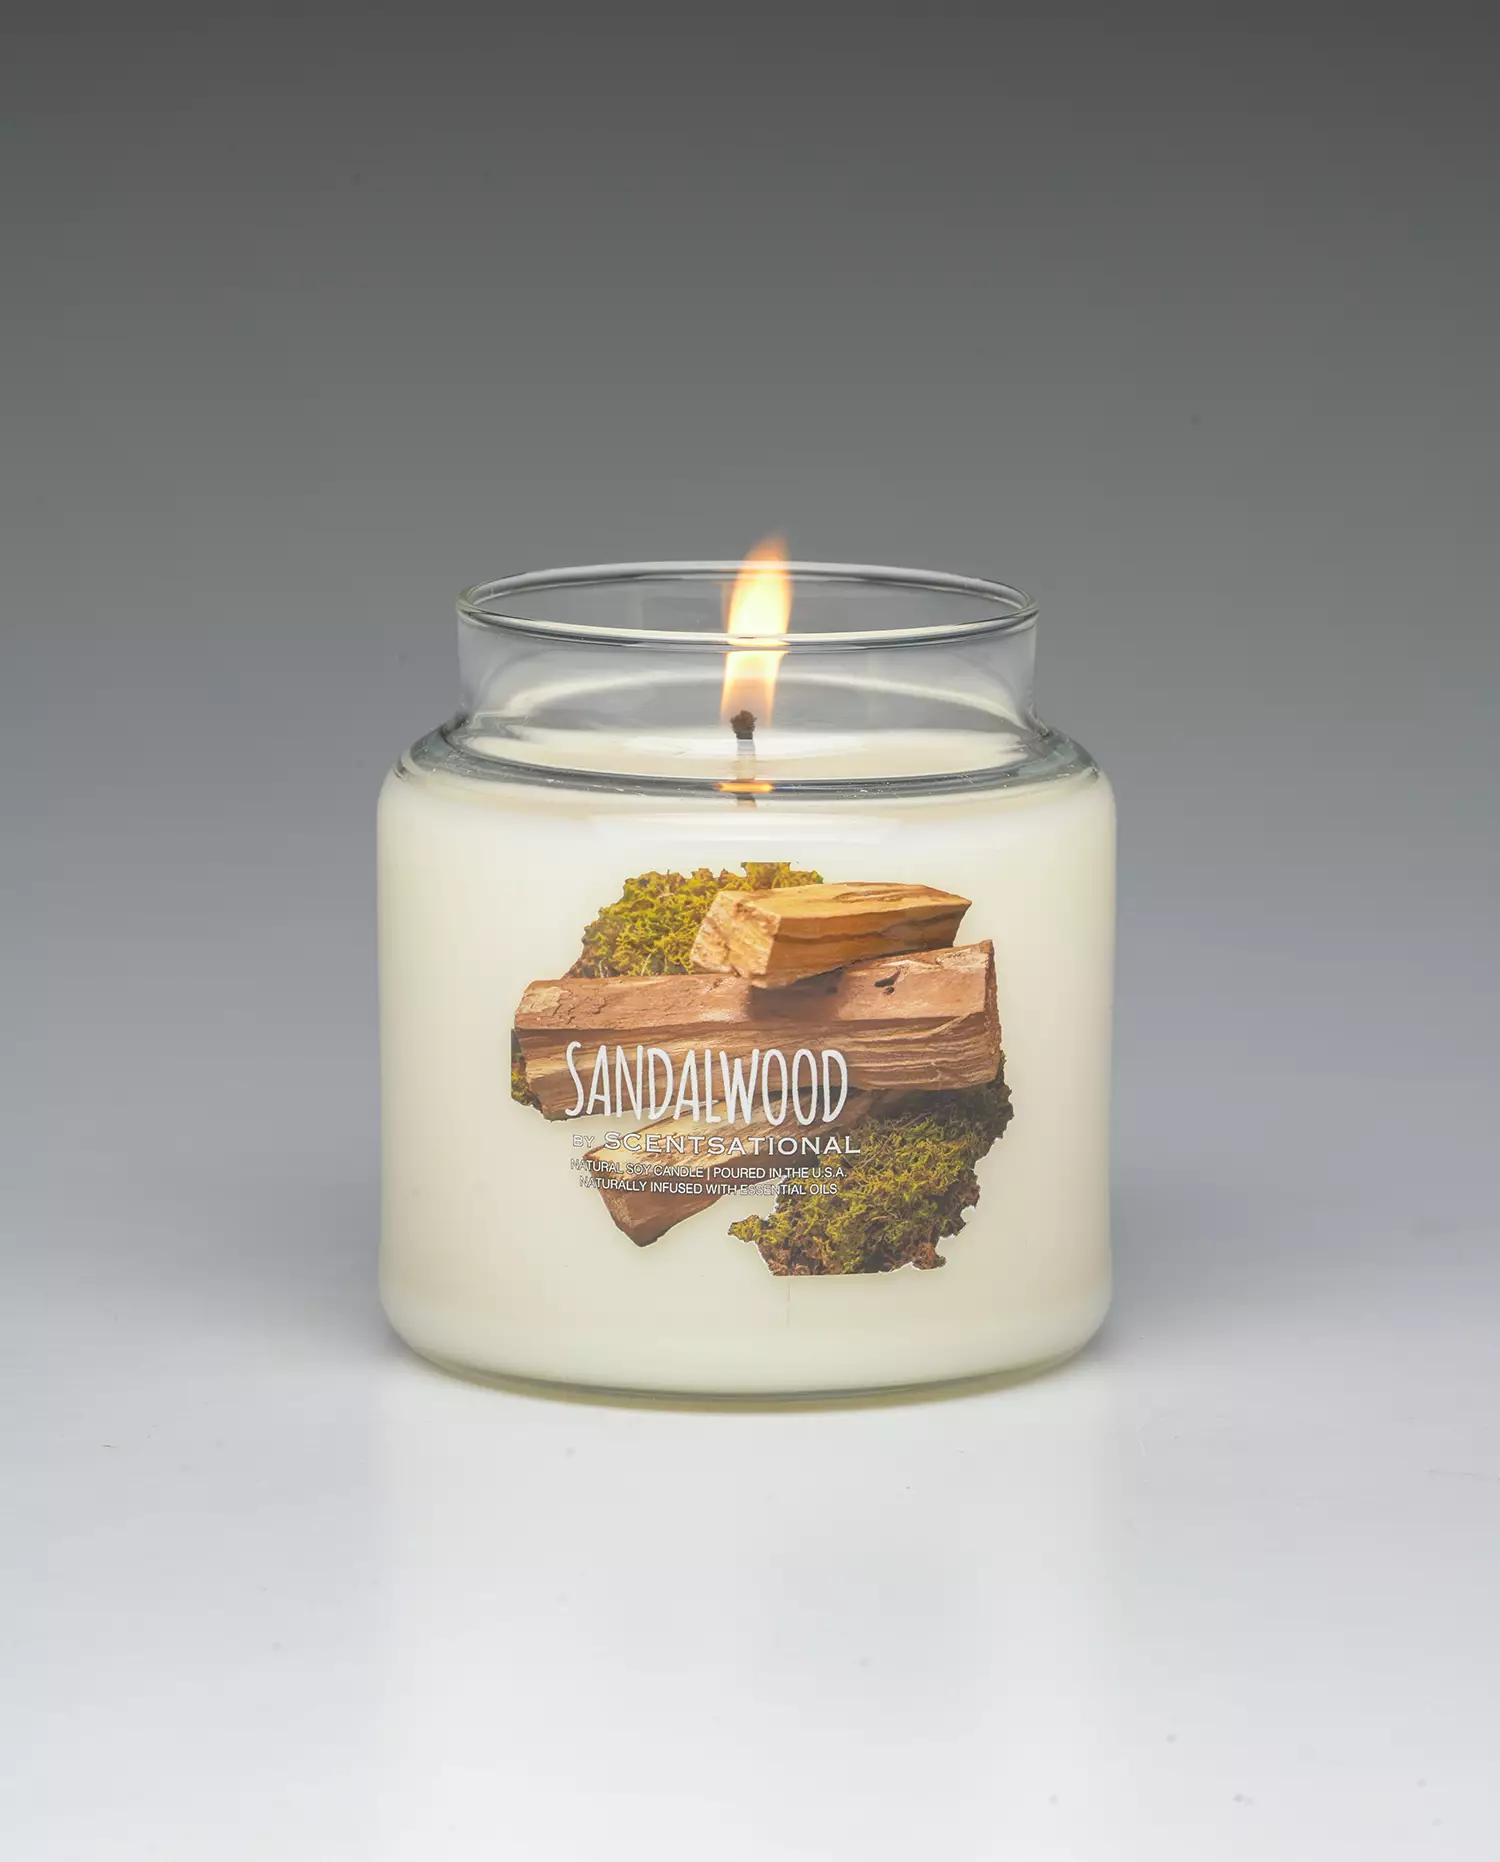 Sandalwood 19oz scented candle burning